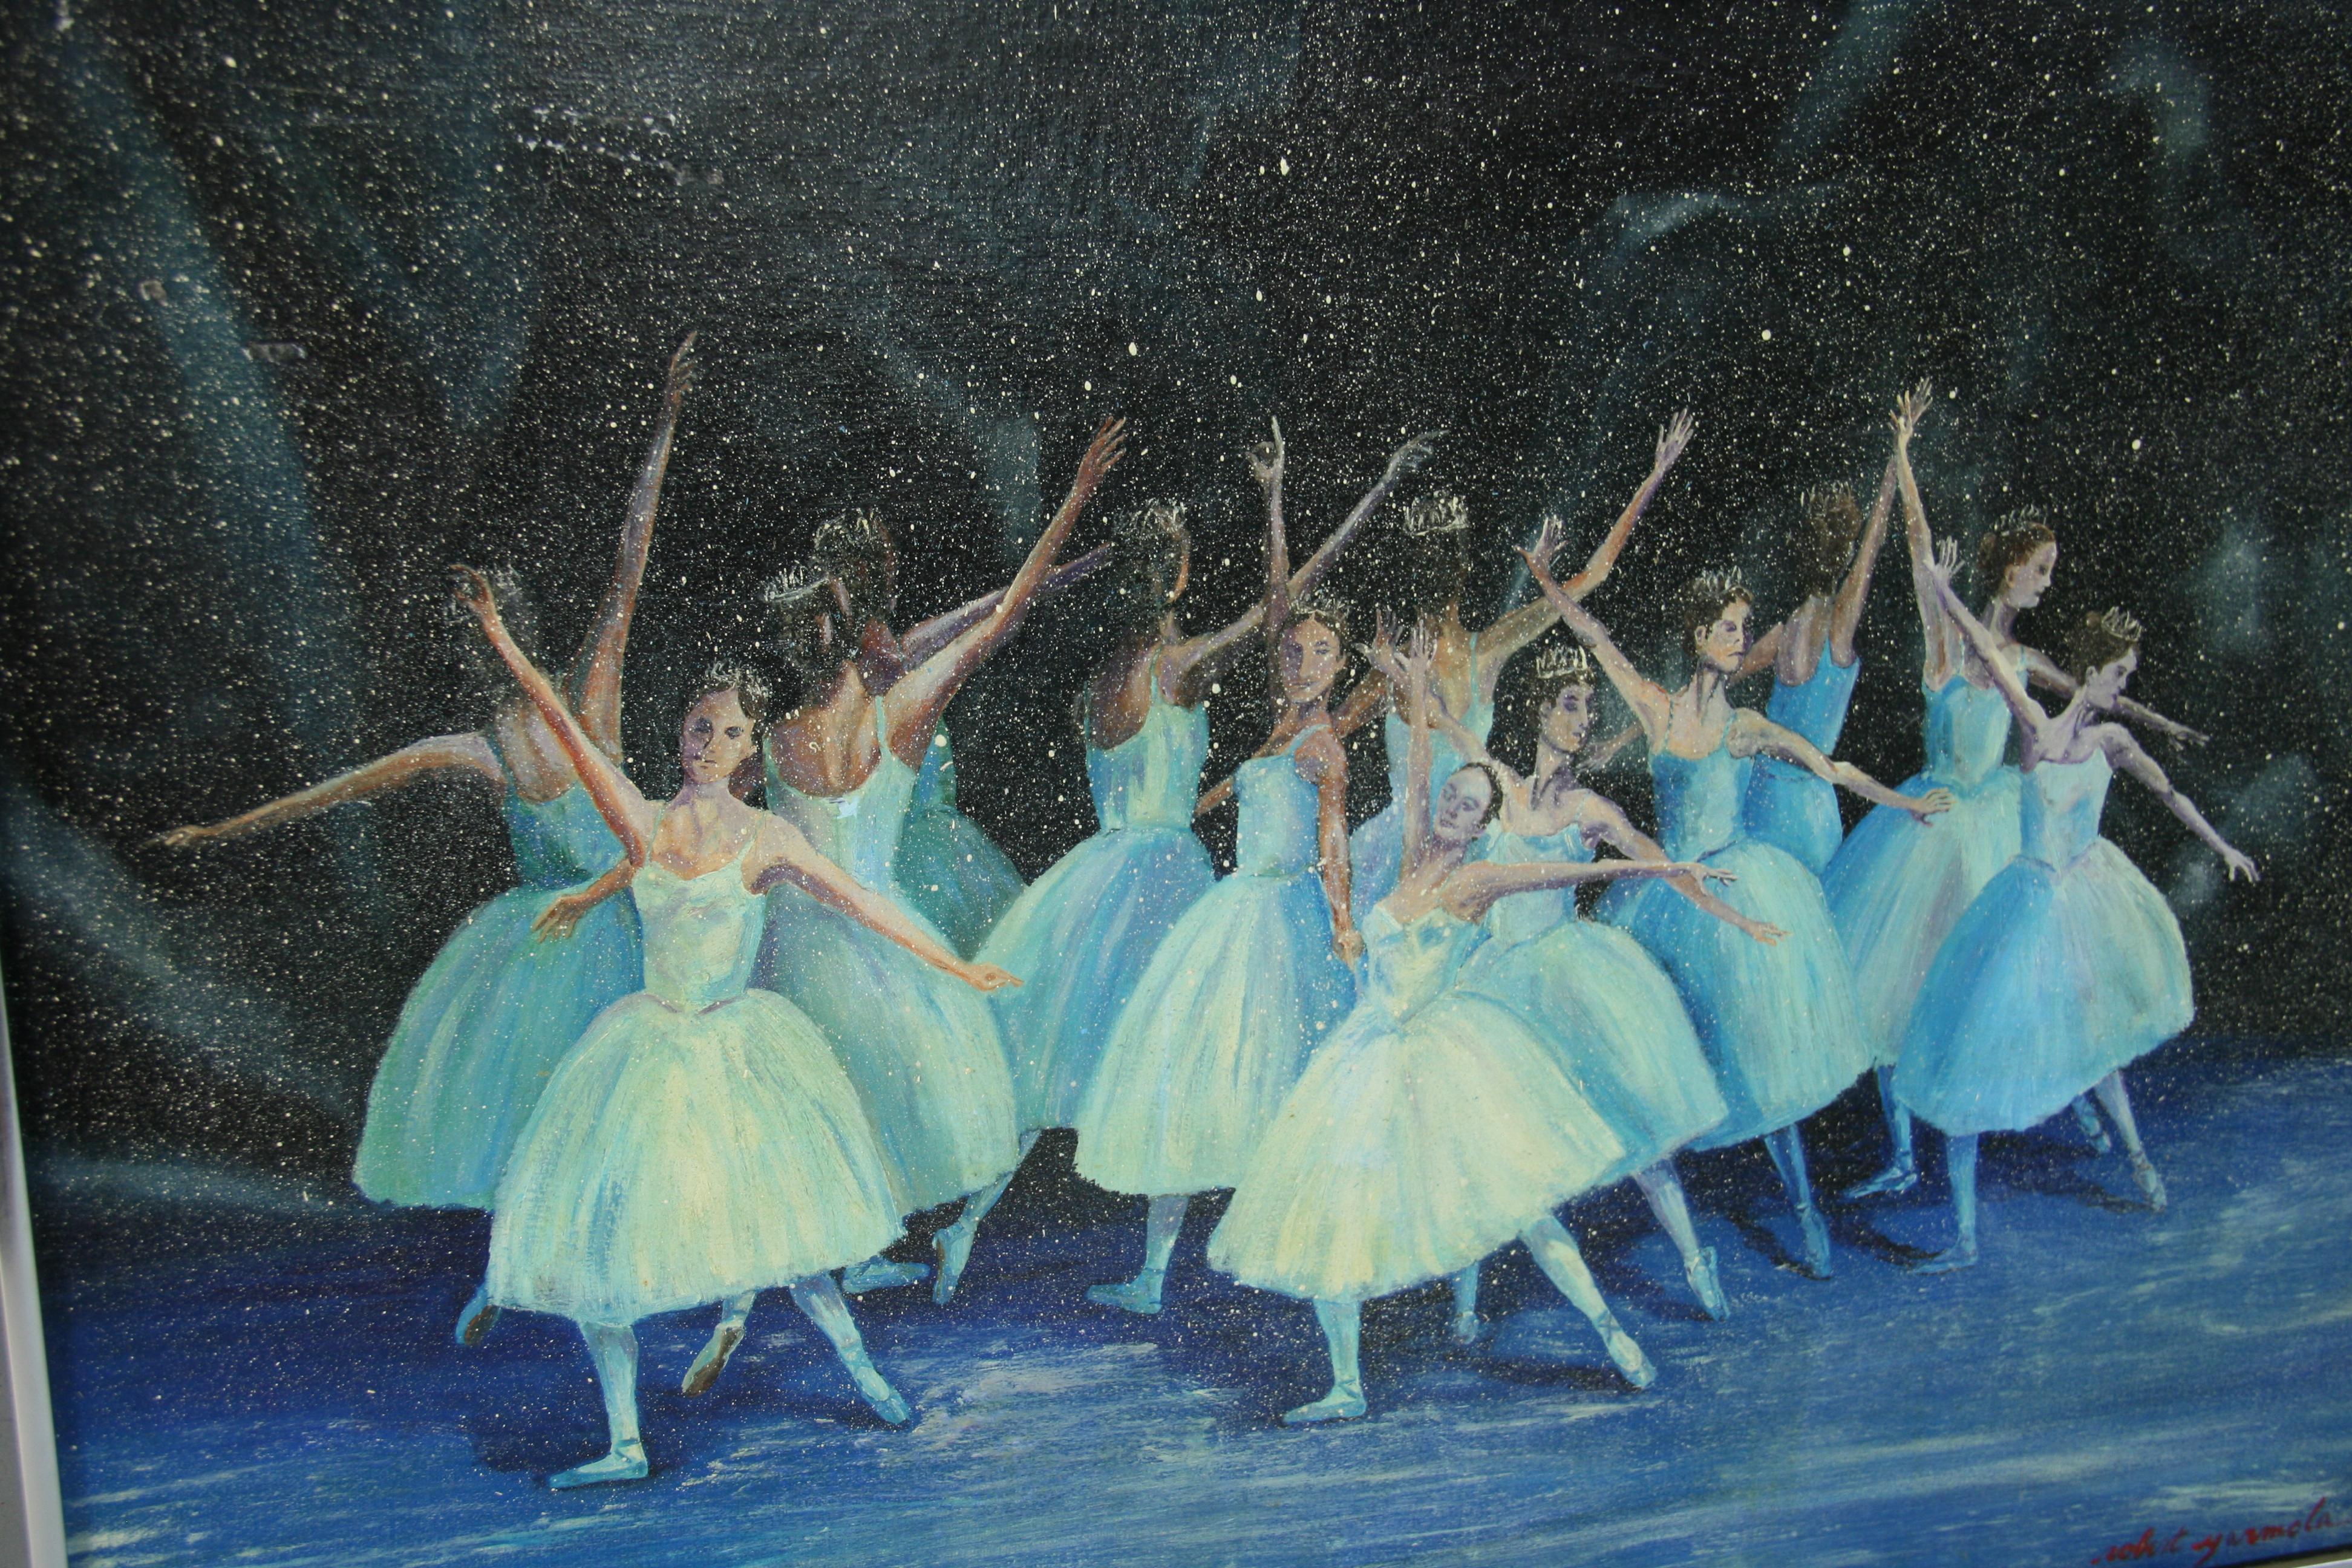 5001 Vintage Impressionist Öl auf Leinwand in einem Metallrahmen, der eine Ballettaufführung darstellt